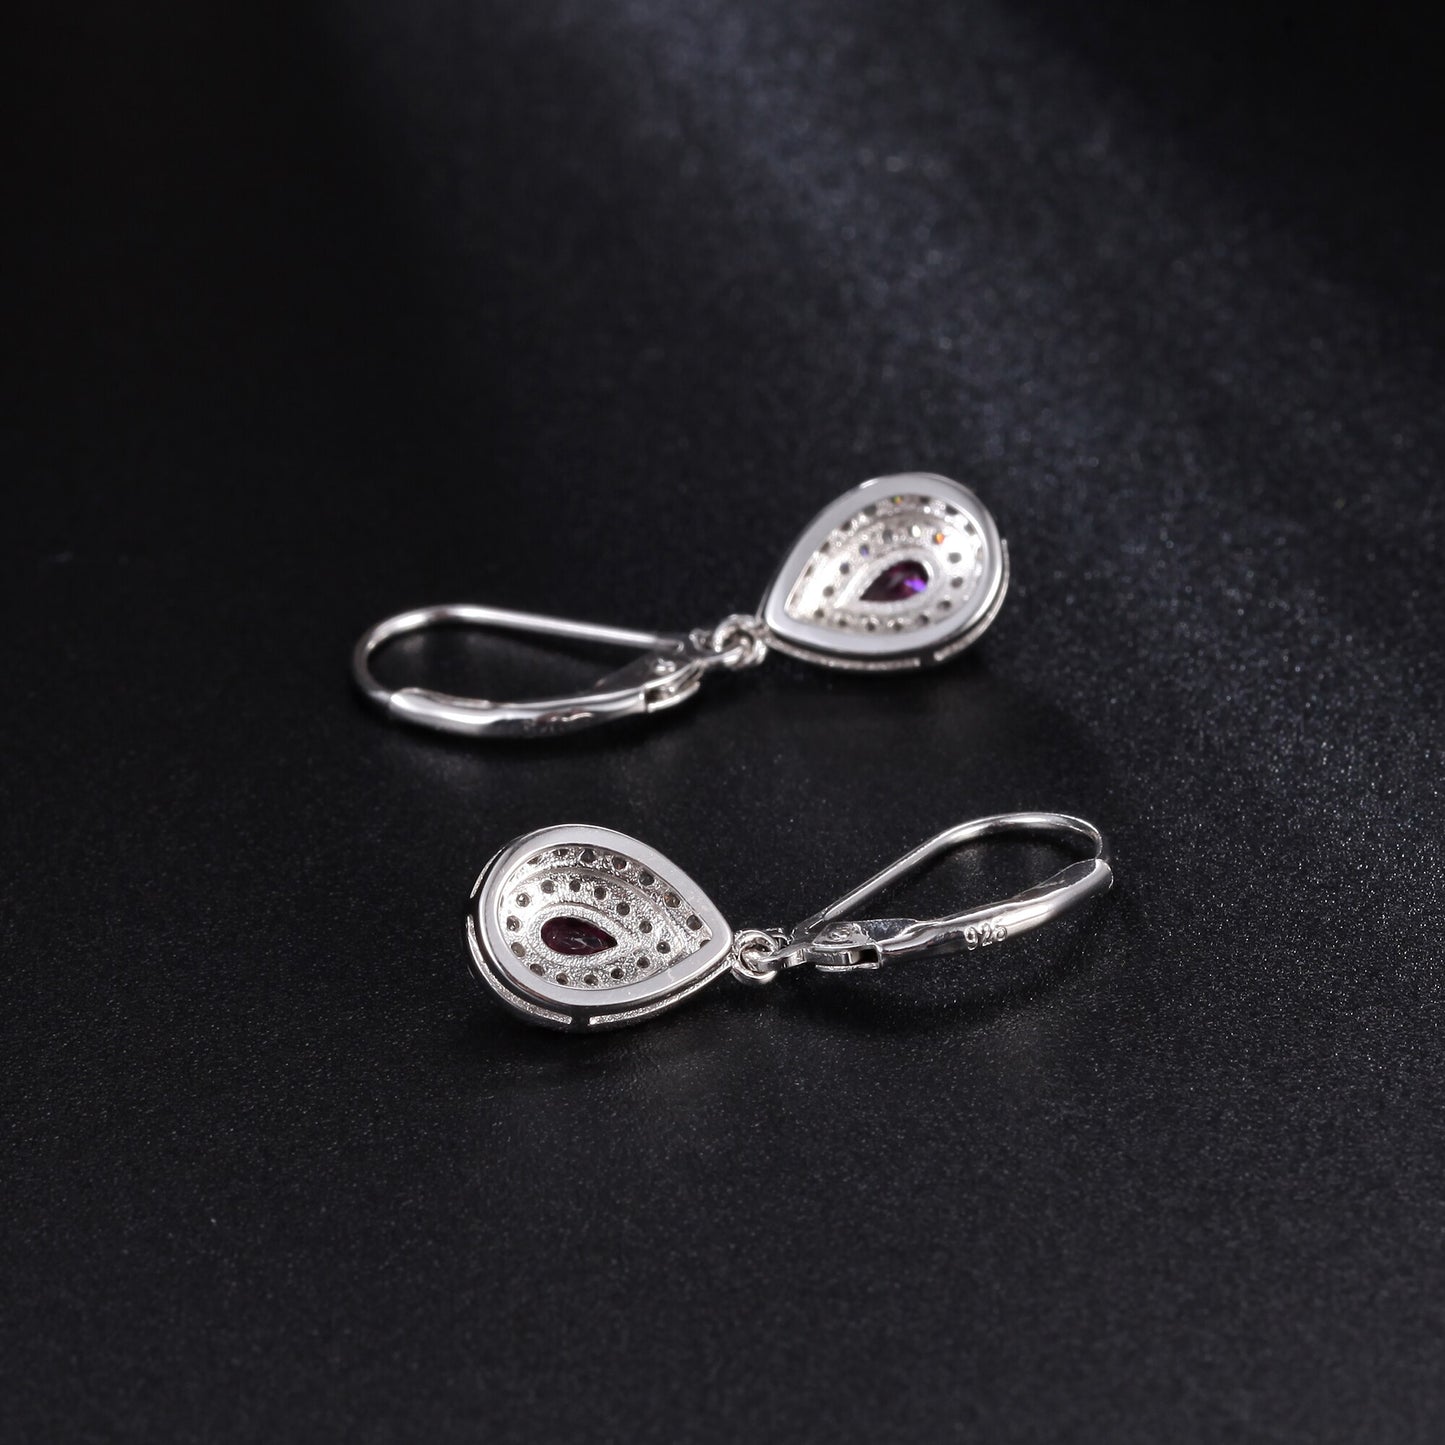 GEM&#39;S BALLET Dainty Gemstone Earrings 4x6mm Pear Shape Rhodolite Garnet Halo Drop Earrings in 925 Sterling Silver Gift For Her